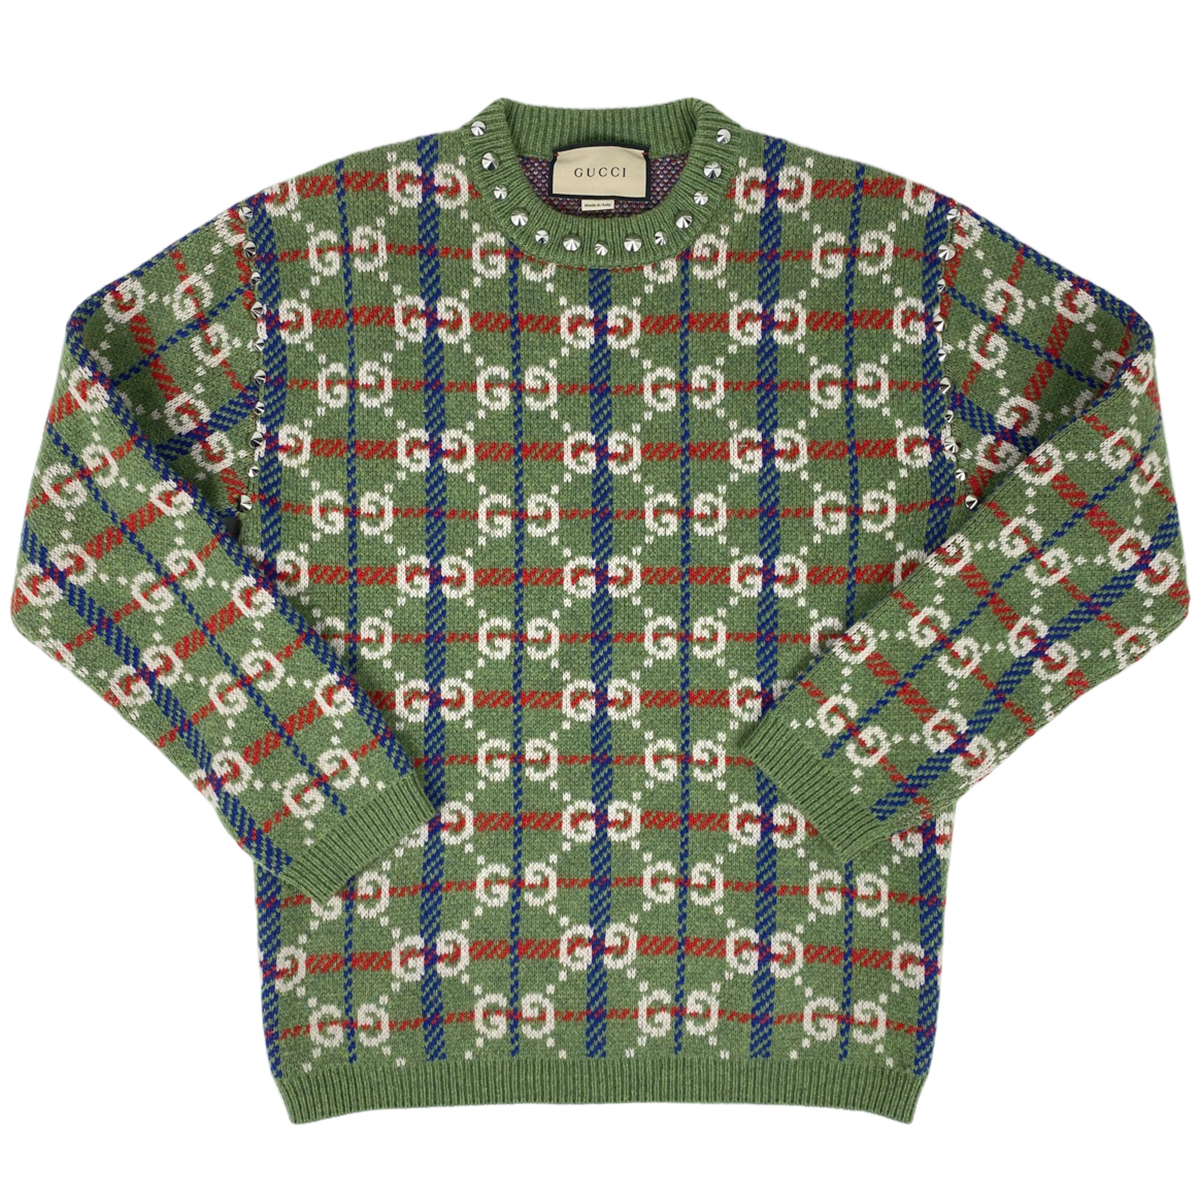  Gucci GUCCI GG рисунок свитер вырез лодочкой вязаный заклепки tops свитер шерсть зеленый многоцветный мужской [ б/у ]